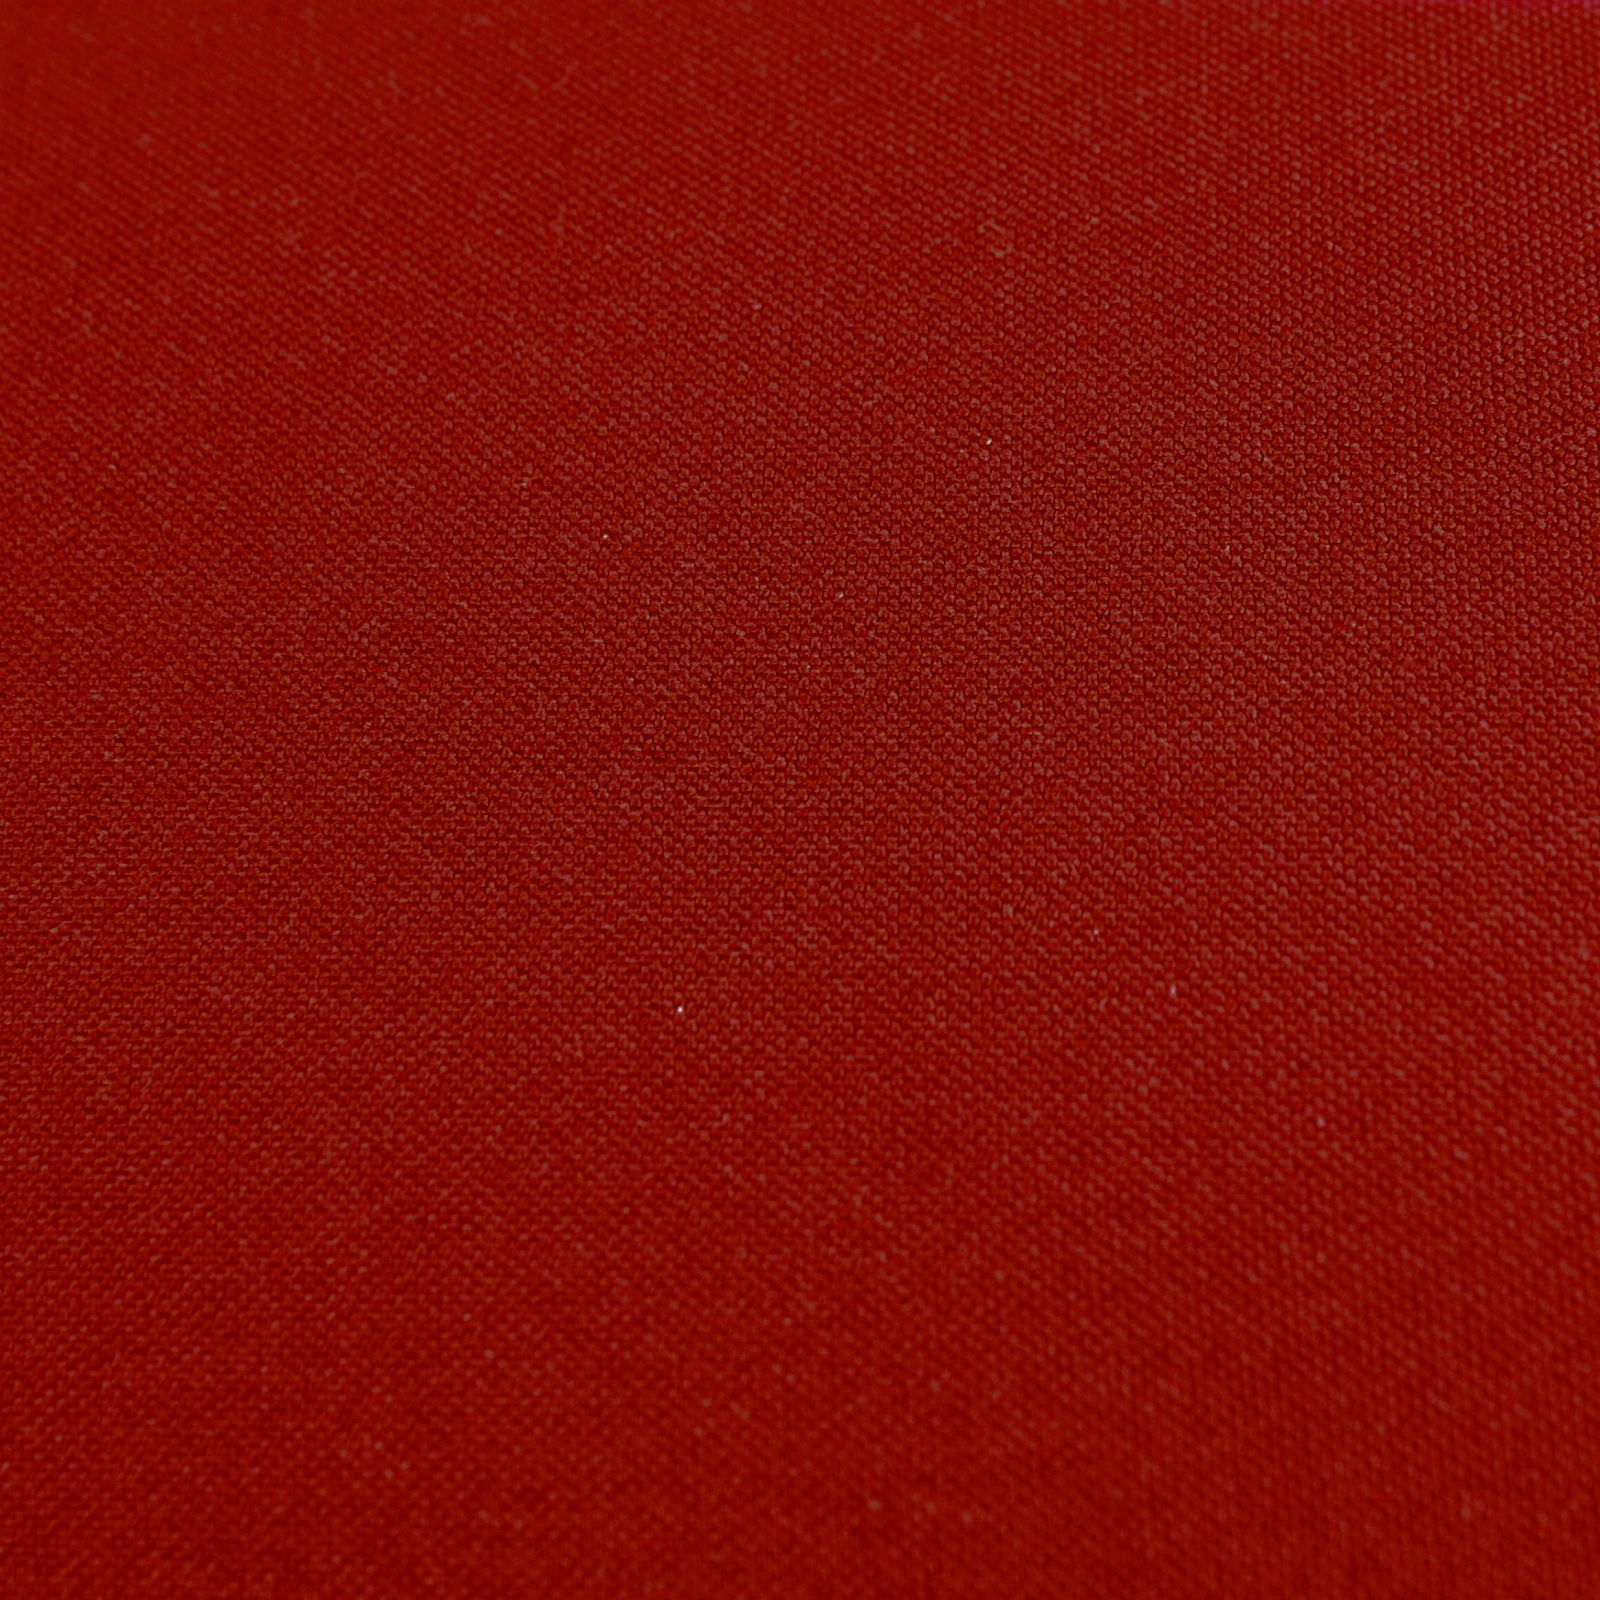 Komplettkissen Polyester-Bordeaux Rot / 30x30 cm